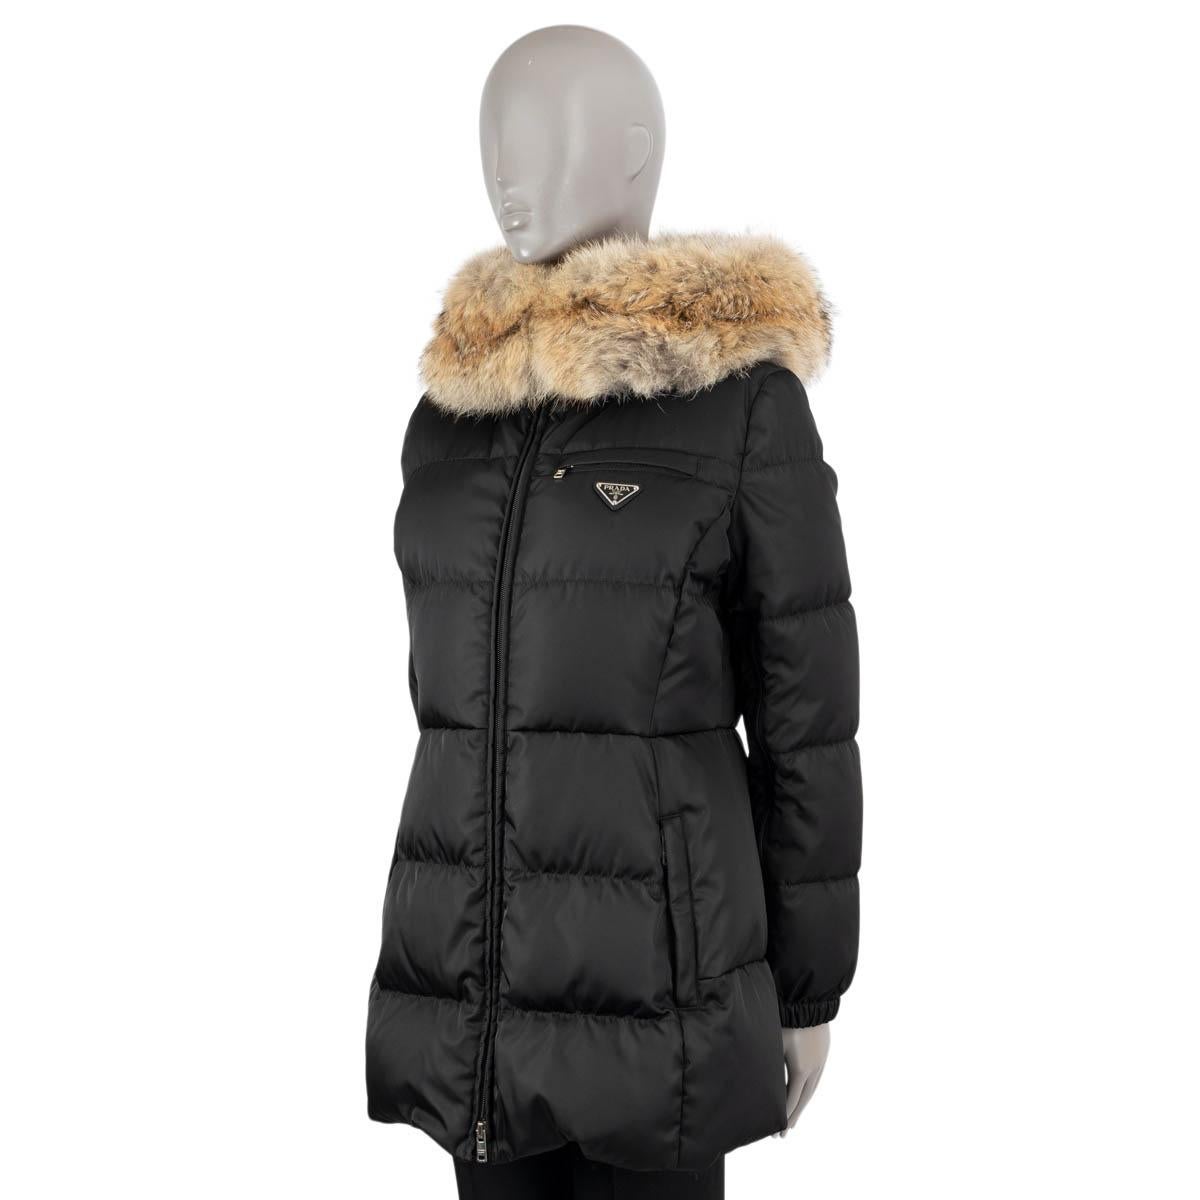 prada jacket with fur